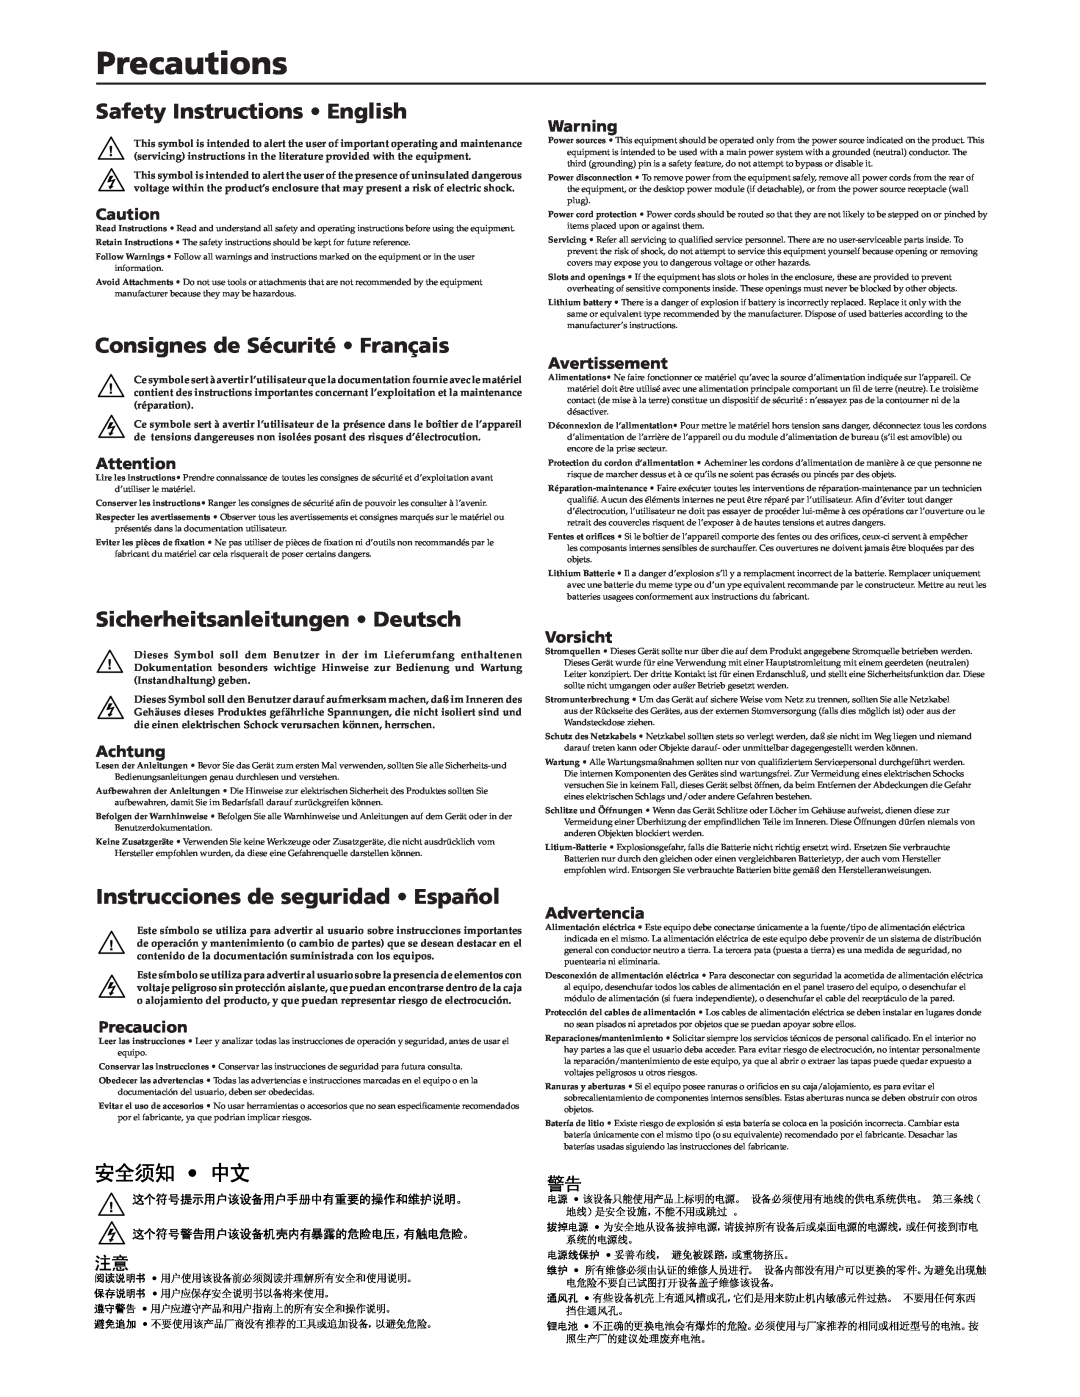 Extron electronic IPI 100 manual Precautions, Safety Instructions English, Consignes de Sécurité Français, 安全须知 中文, Achtung 